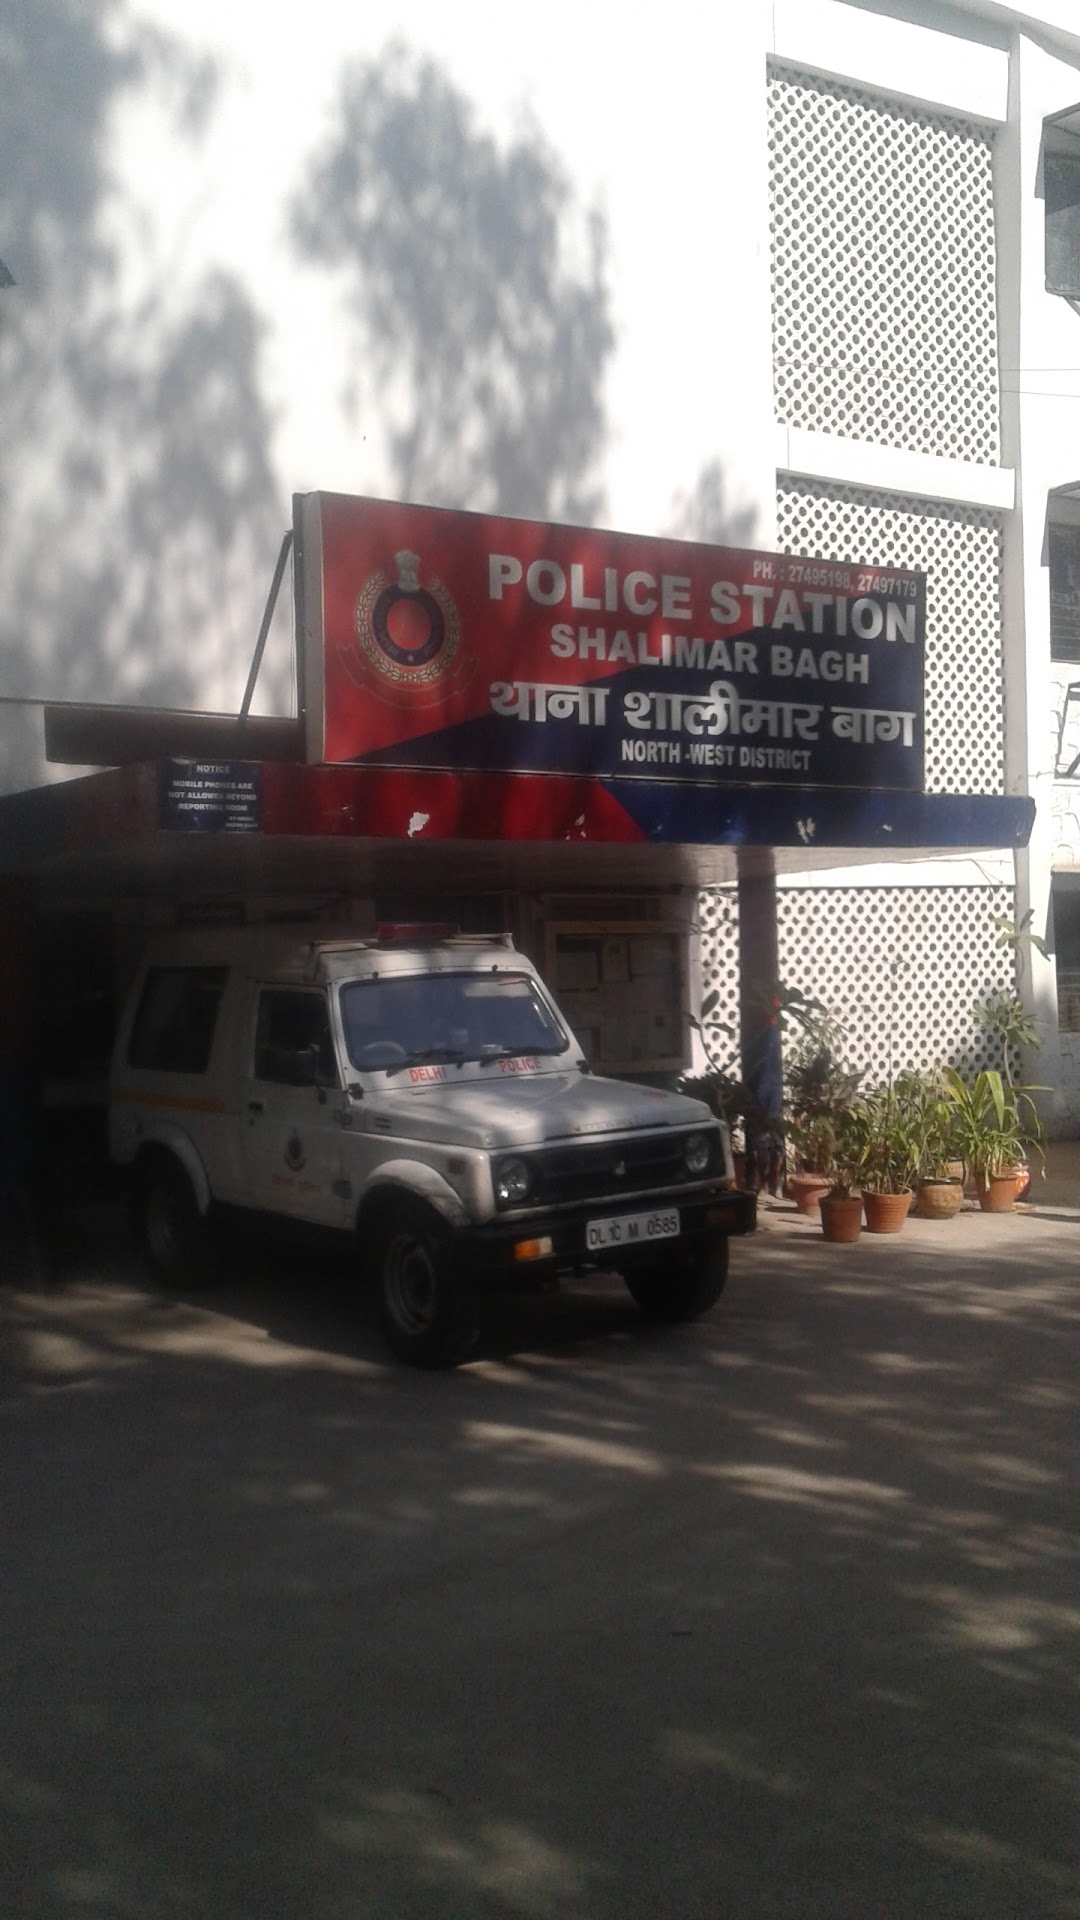 Police Station Shalimar Bagh